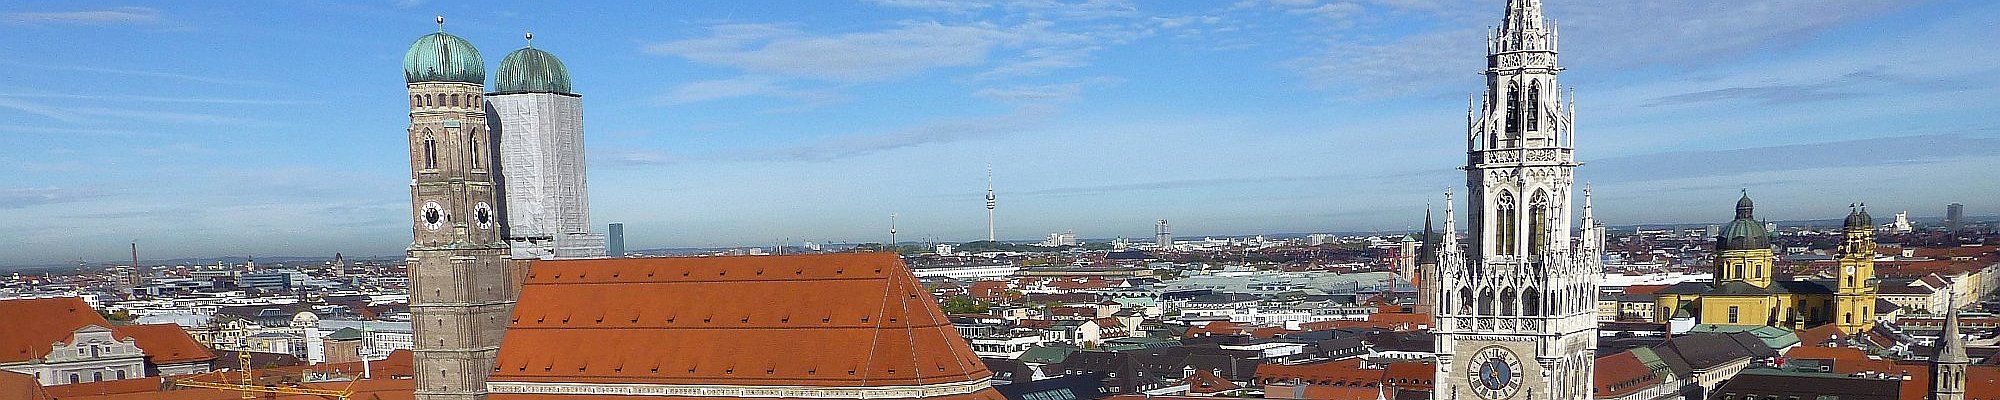 Städtereise nach München © Michael auf Pixabay